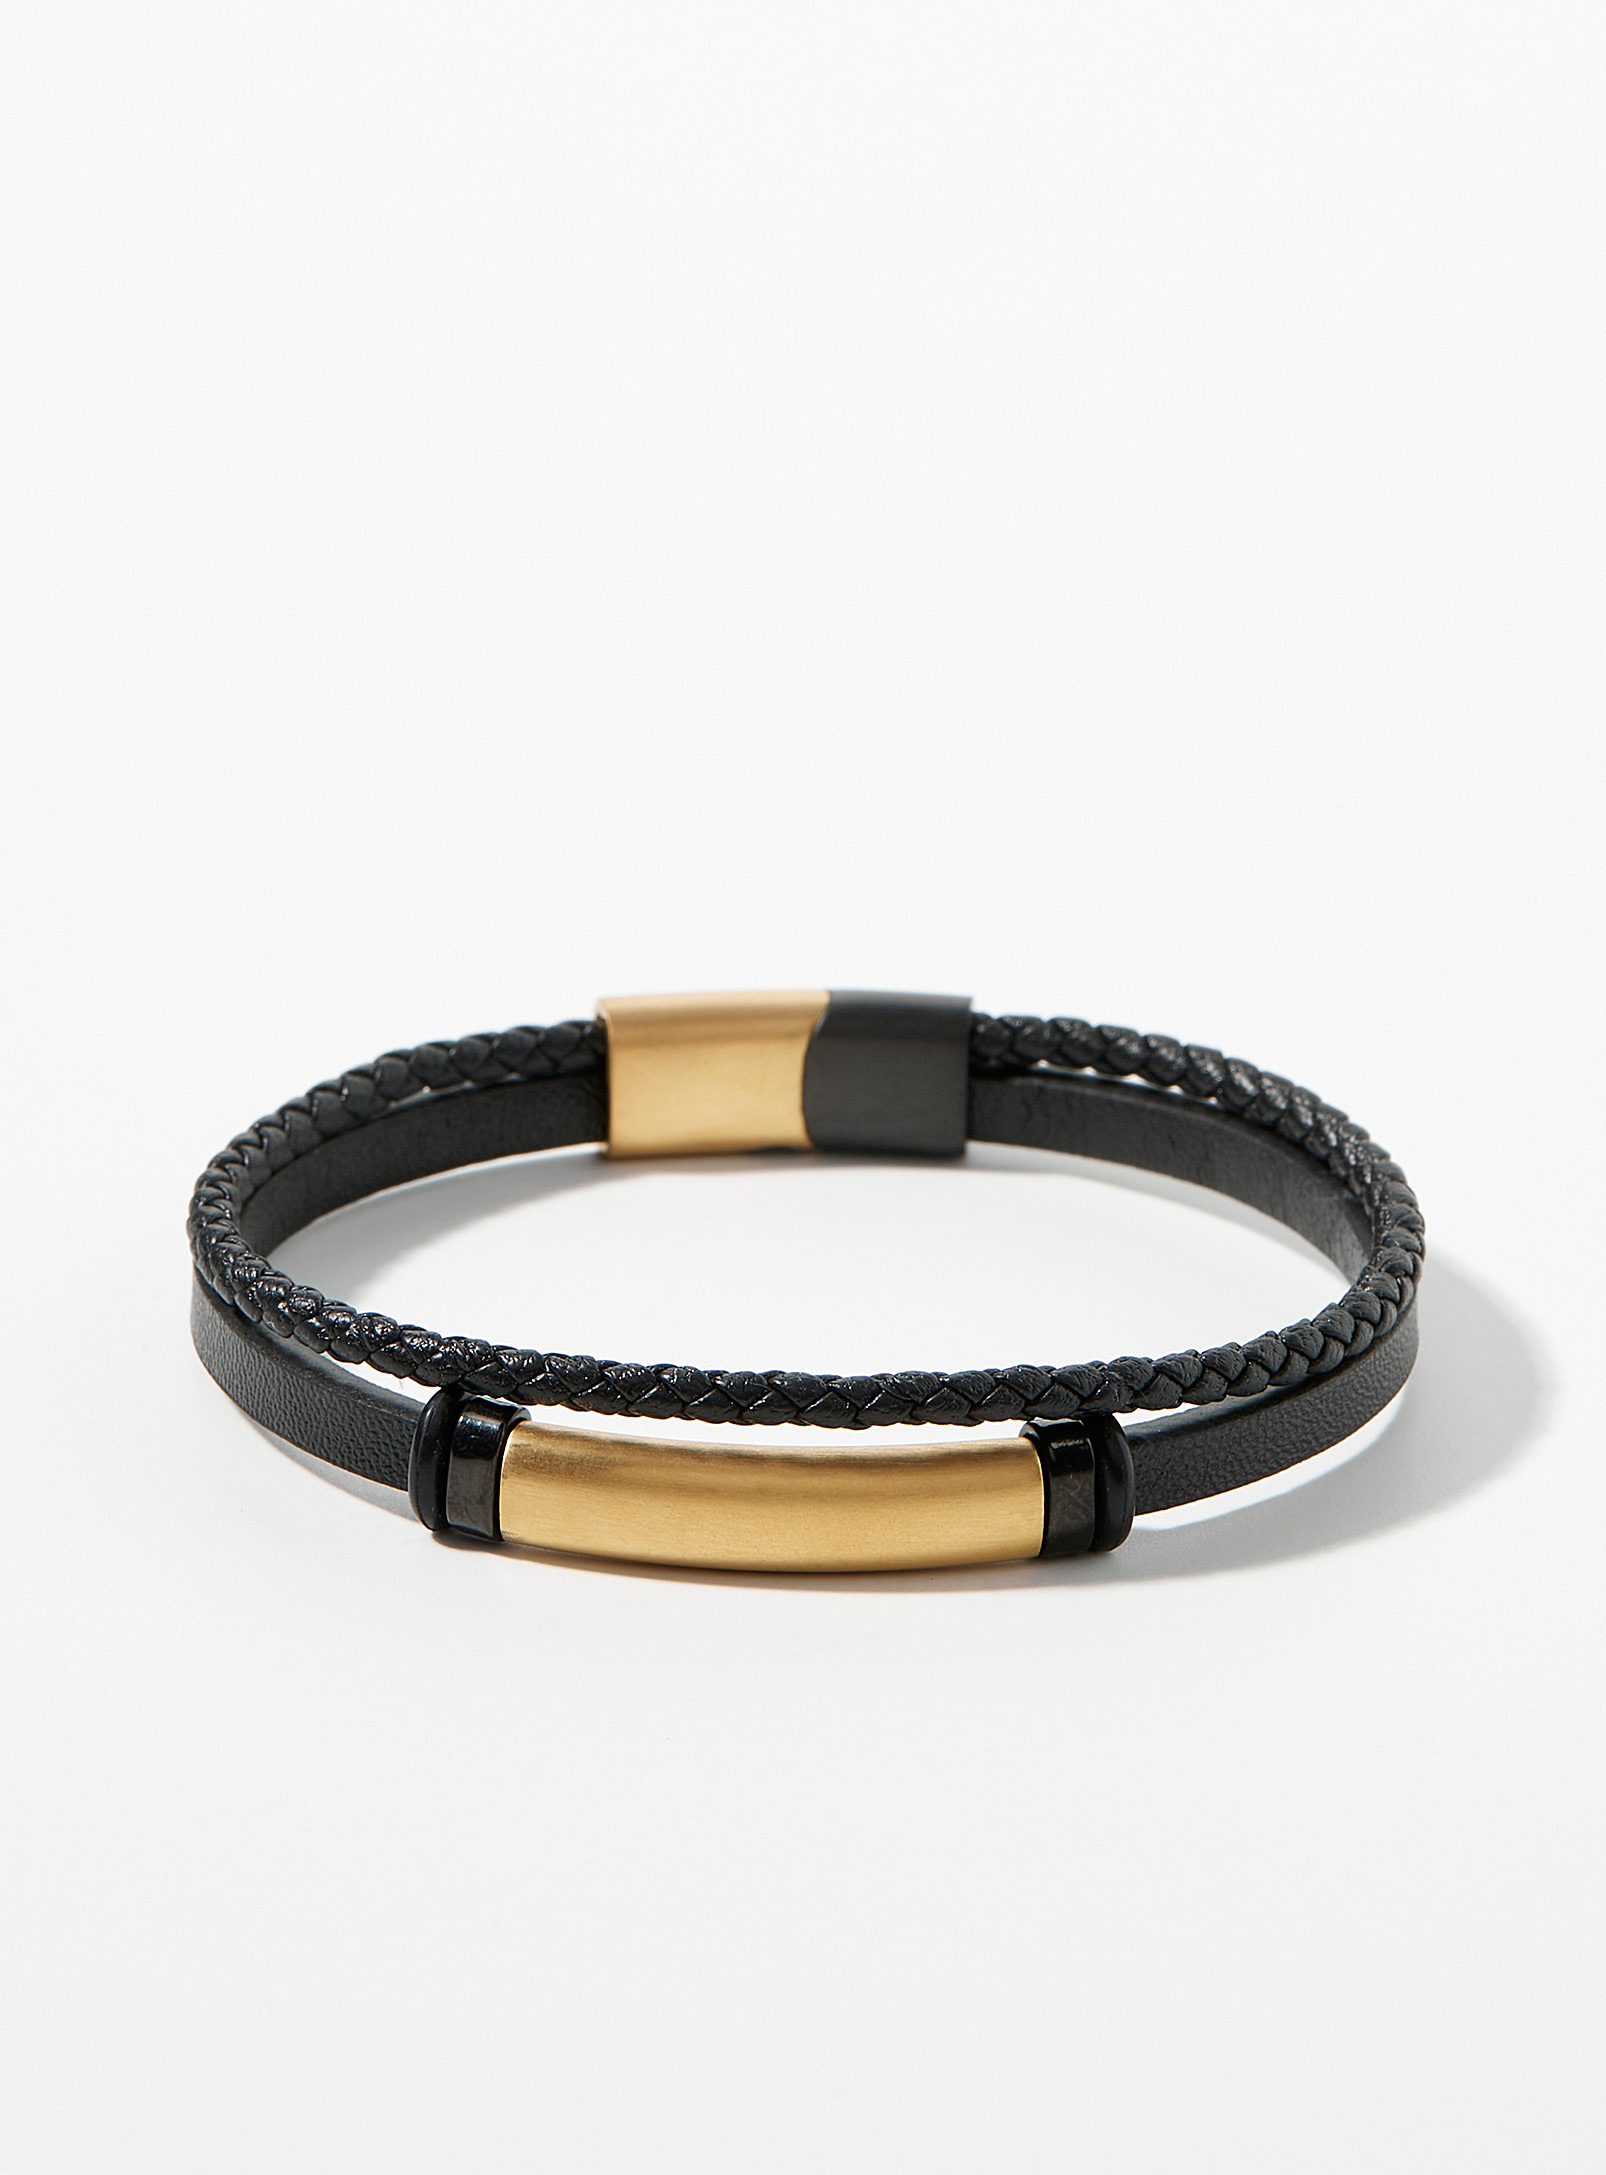 Le 31 - Men's Golden accent leather bracelet